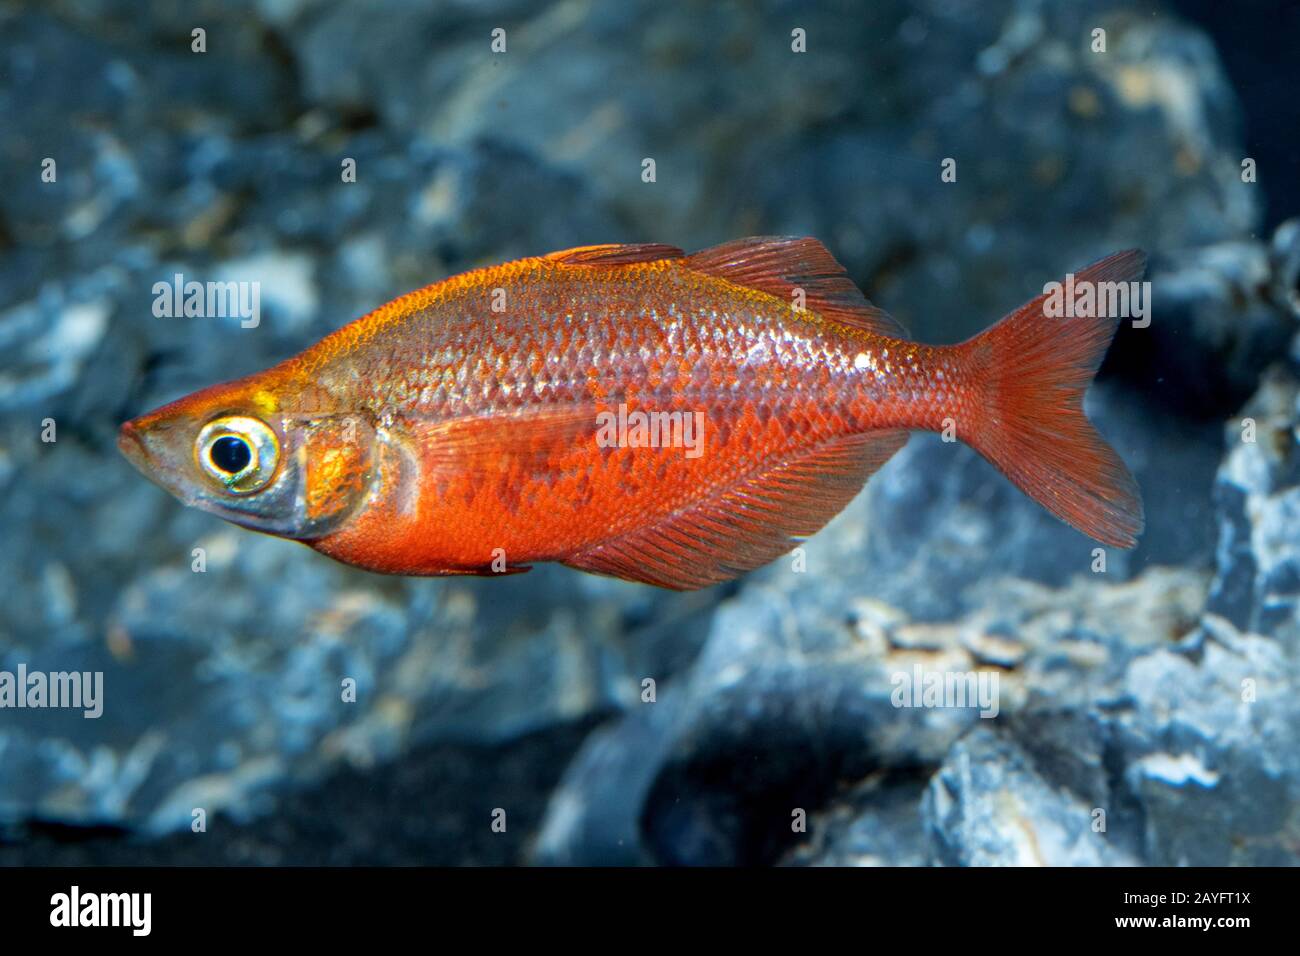 Red rainbowfish, Salmon-red rainbowfish, New Guinea Red Irian Rainbowfish (Glossolepis incisus), side view Stock Photo